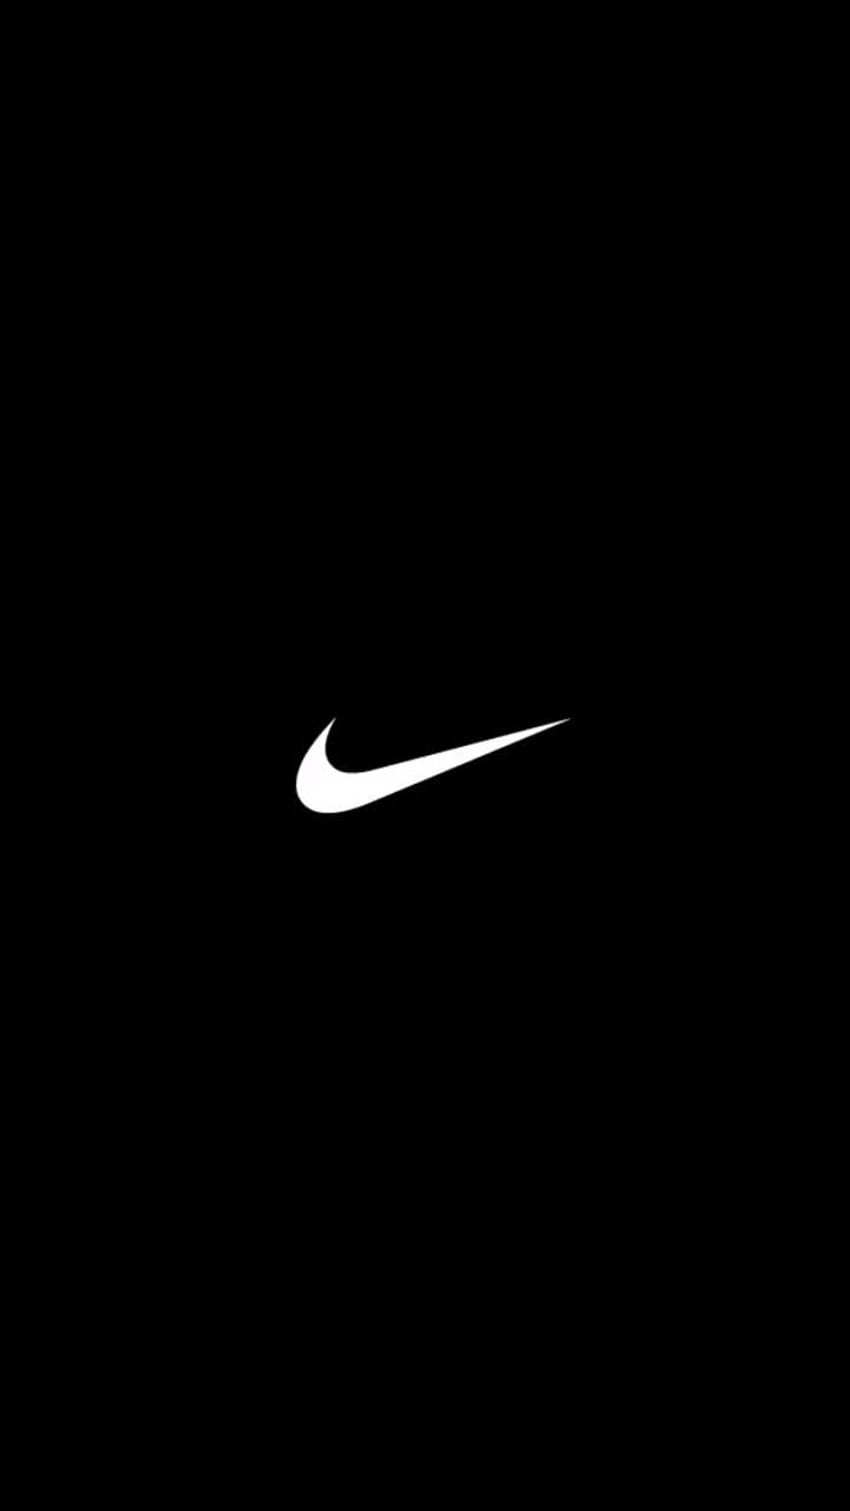 Dageraad Vleugels Spreek uit Nike HD wallpapers | Pxfuel